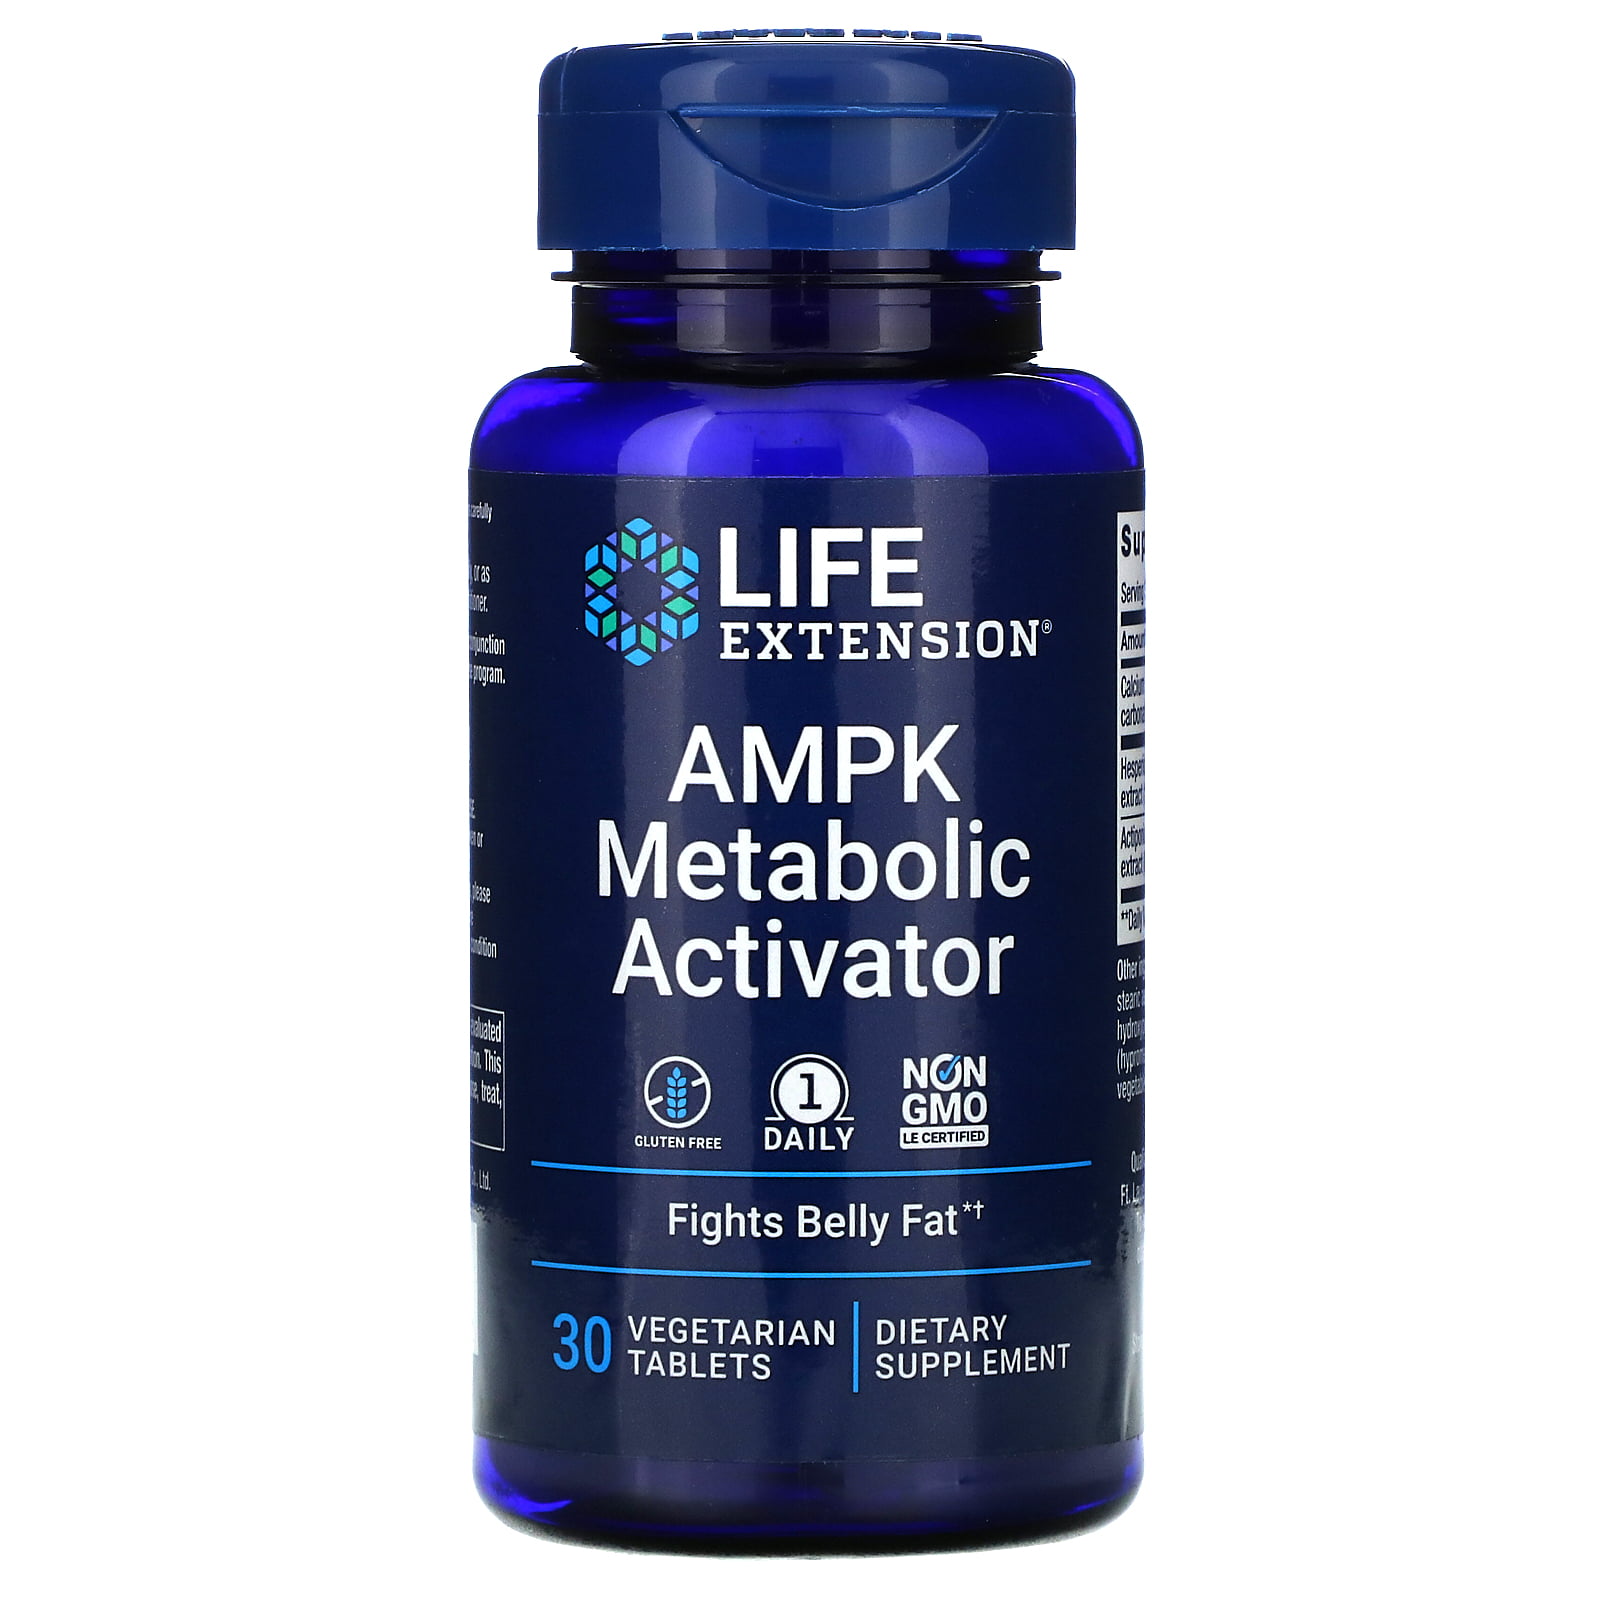 life extension ampk metabolic activator 30 vegetarian tablets walmart com walmart com